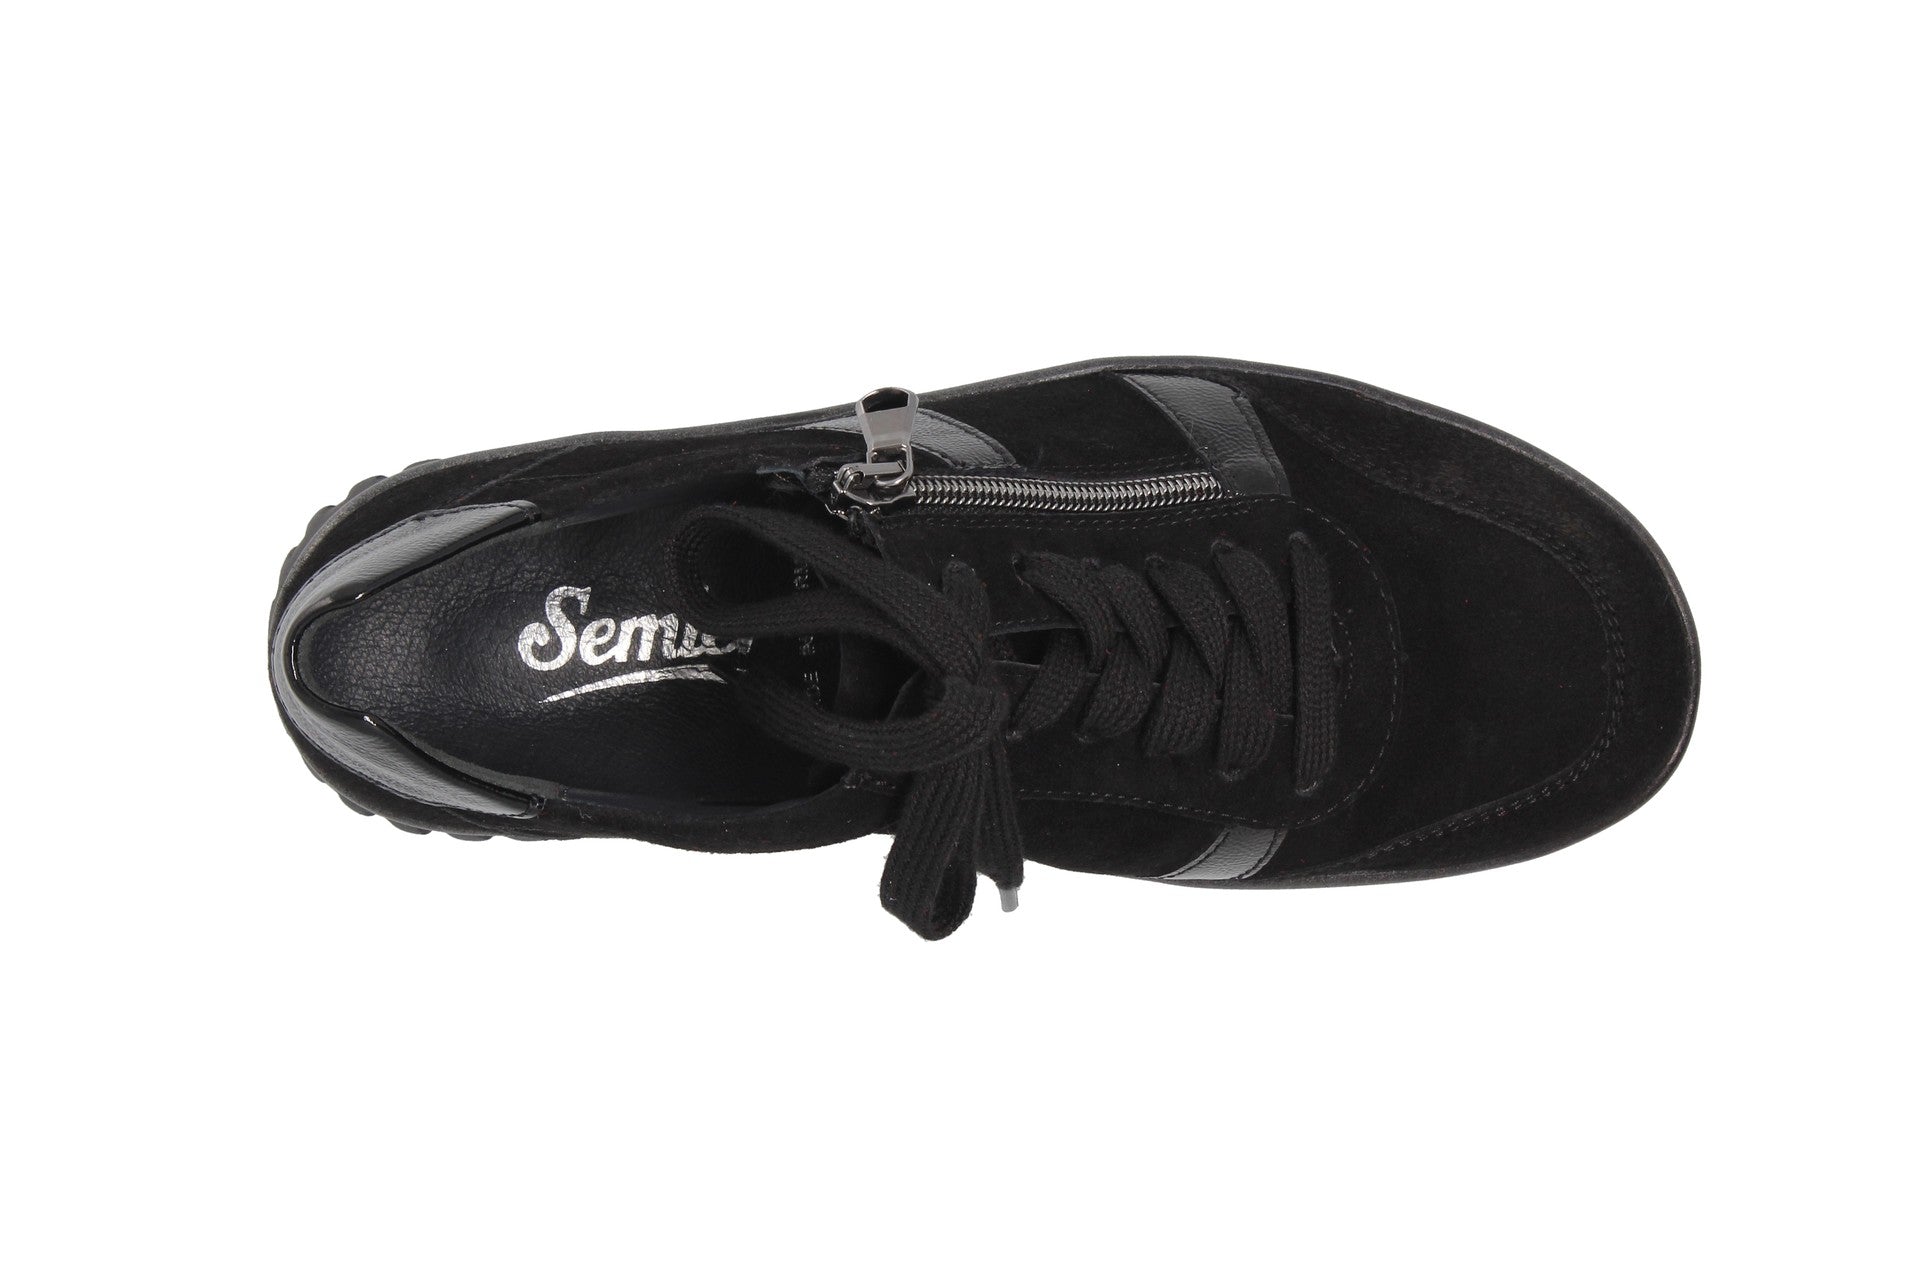 Lena – noir – chaussure à lacets